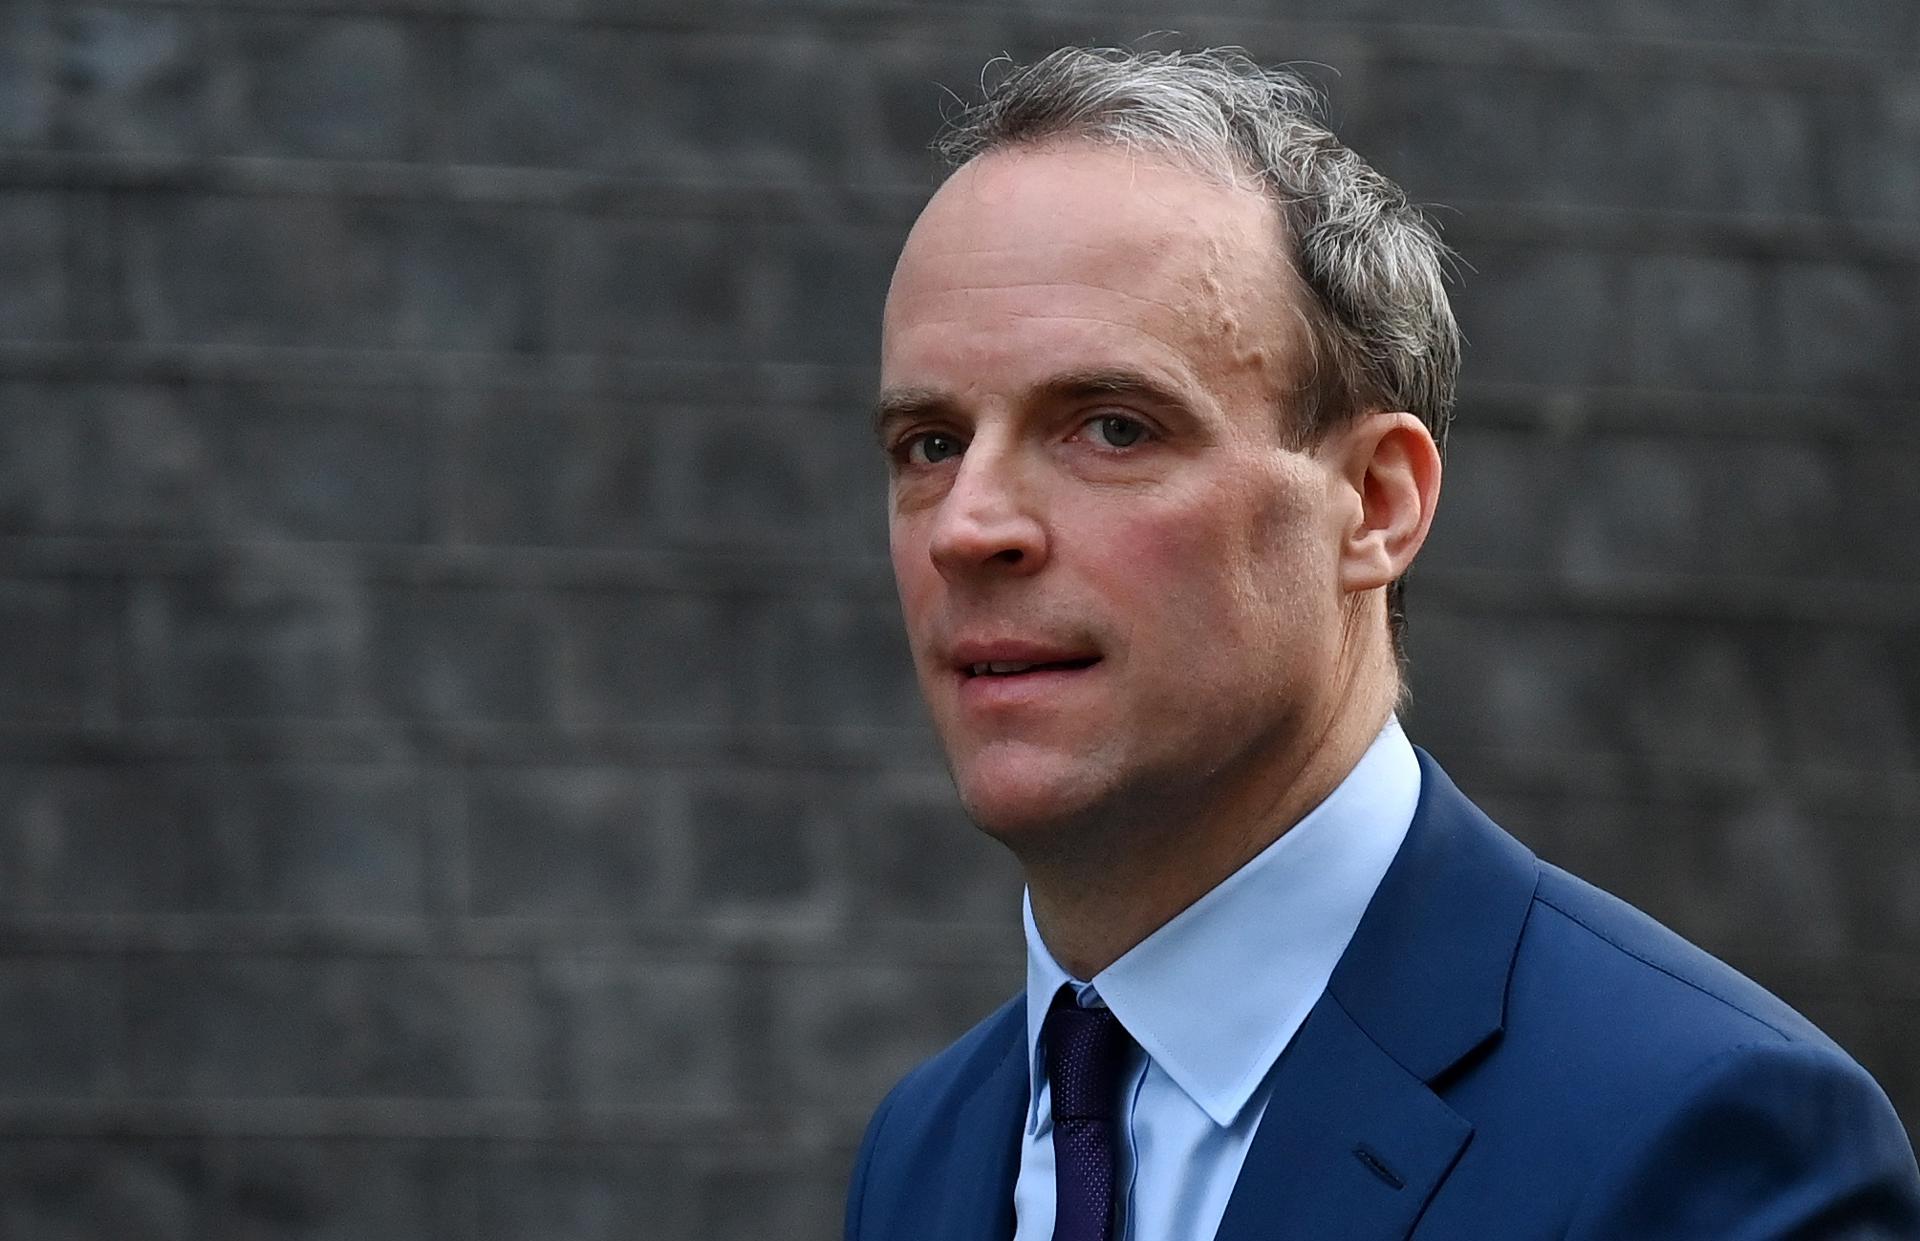 El viceprimer ministro británico es investigado por 8 denuncias de acoso laboral